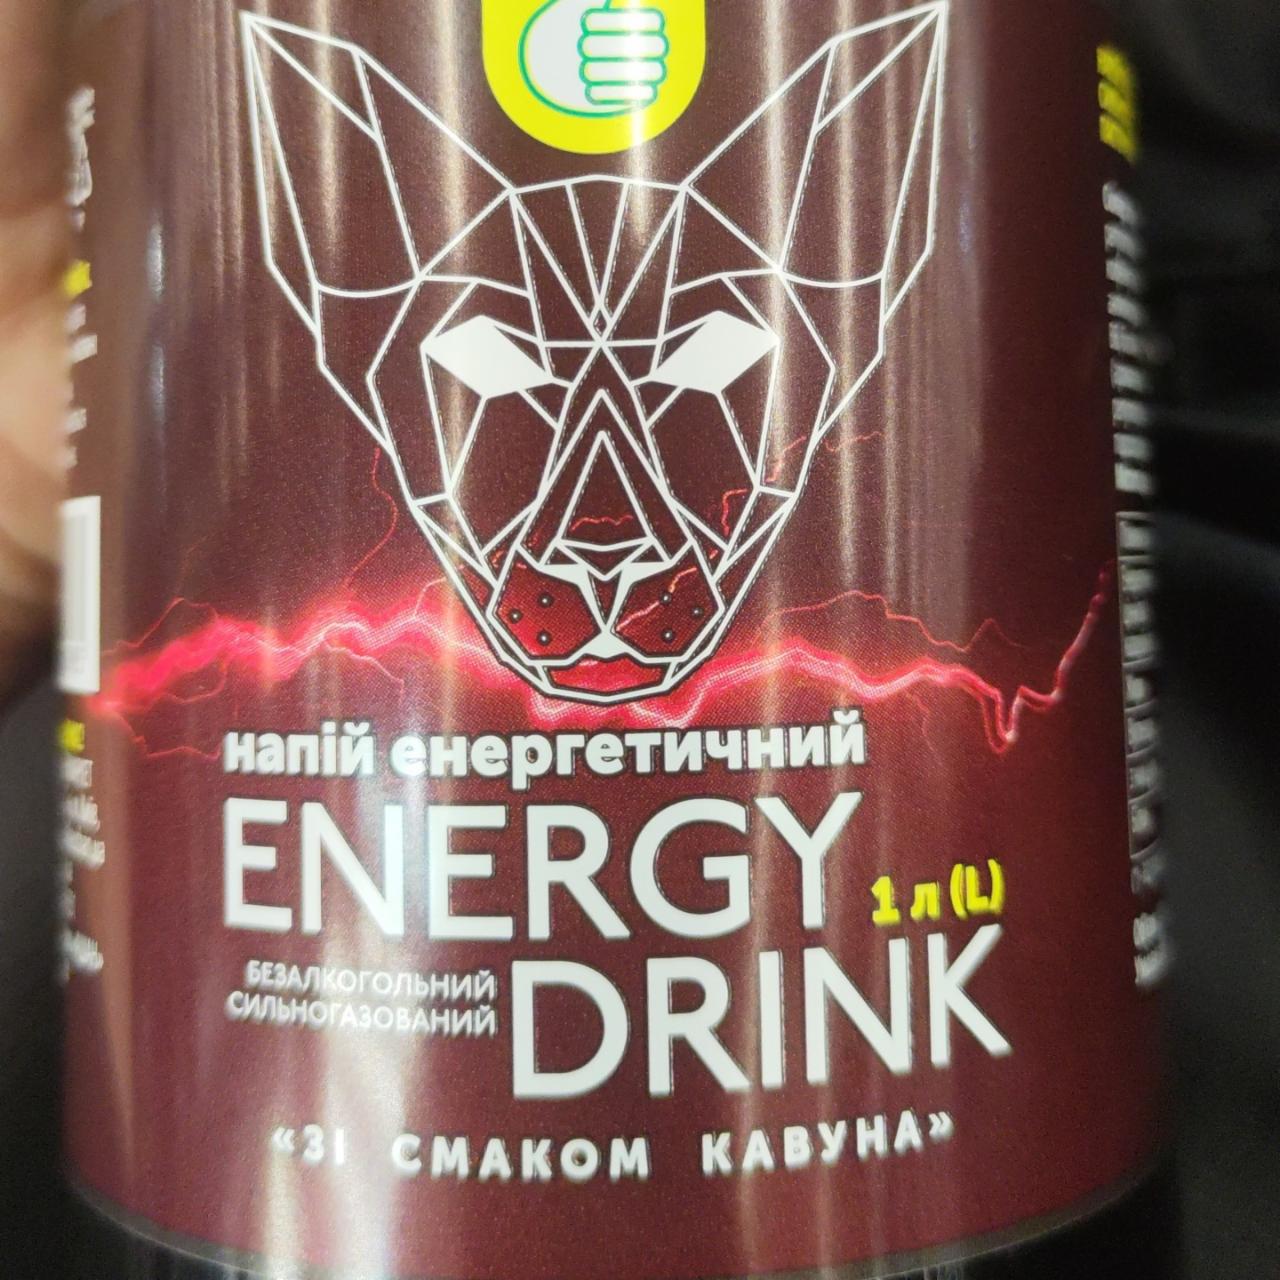 Фото - Напій енергетичний безалкогольний сильногазований зі смаком кавуна Energy Drink Auchan